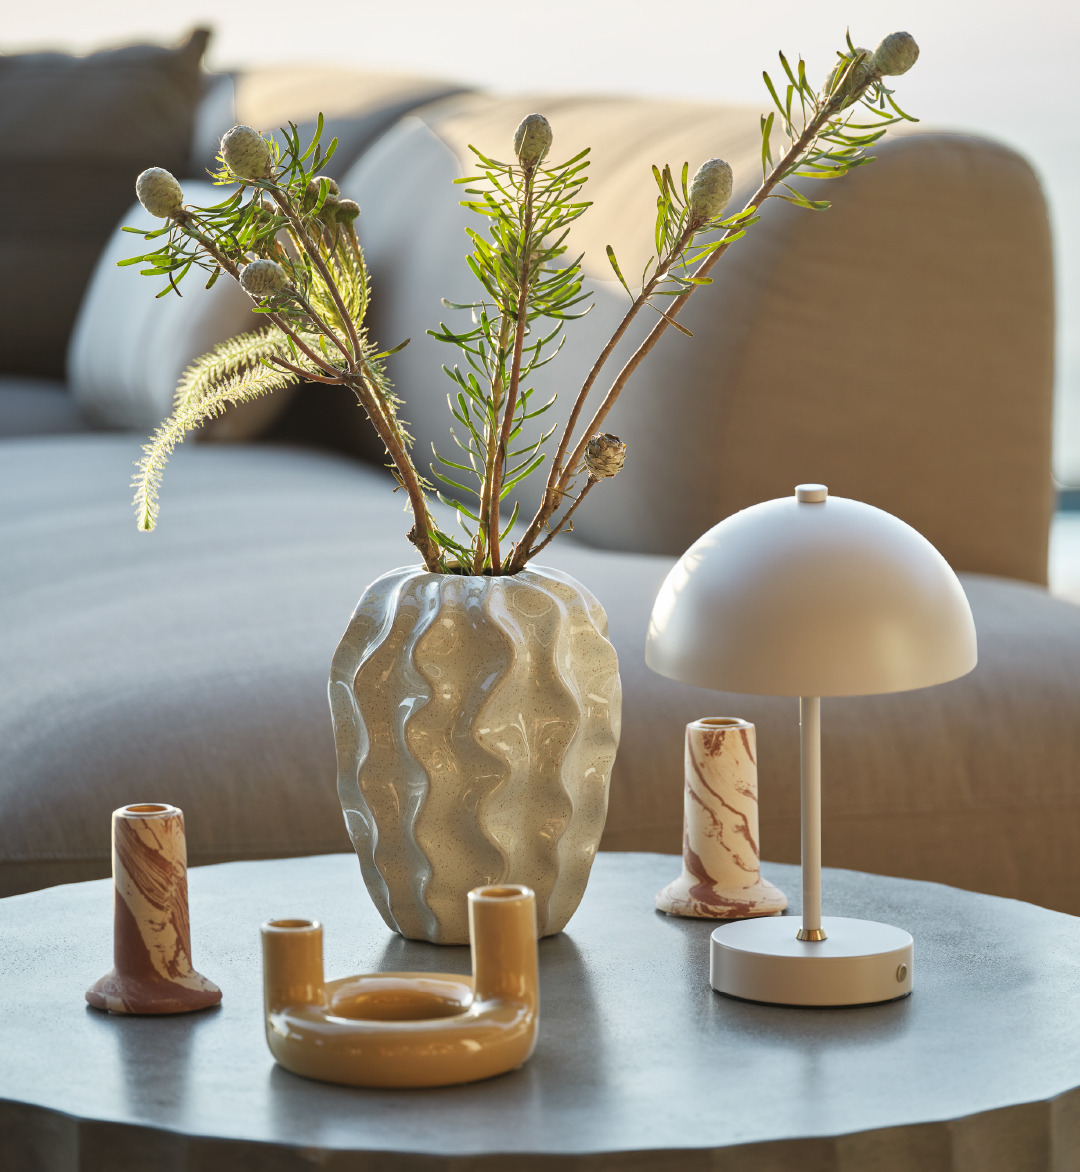 Décoration d'exterieur sur table lounge de jardin avec chandelier, vase, lampe à piles